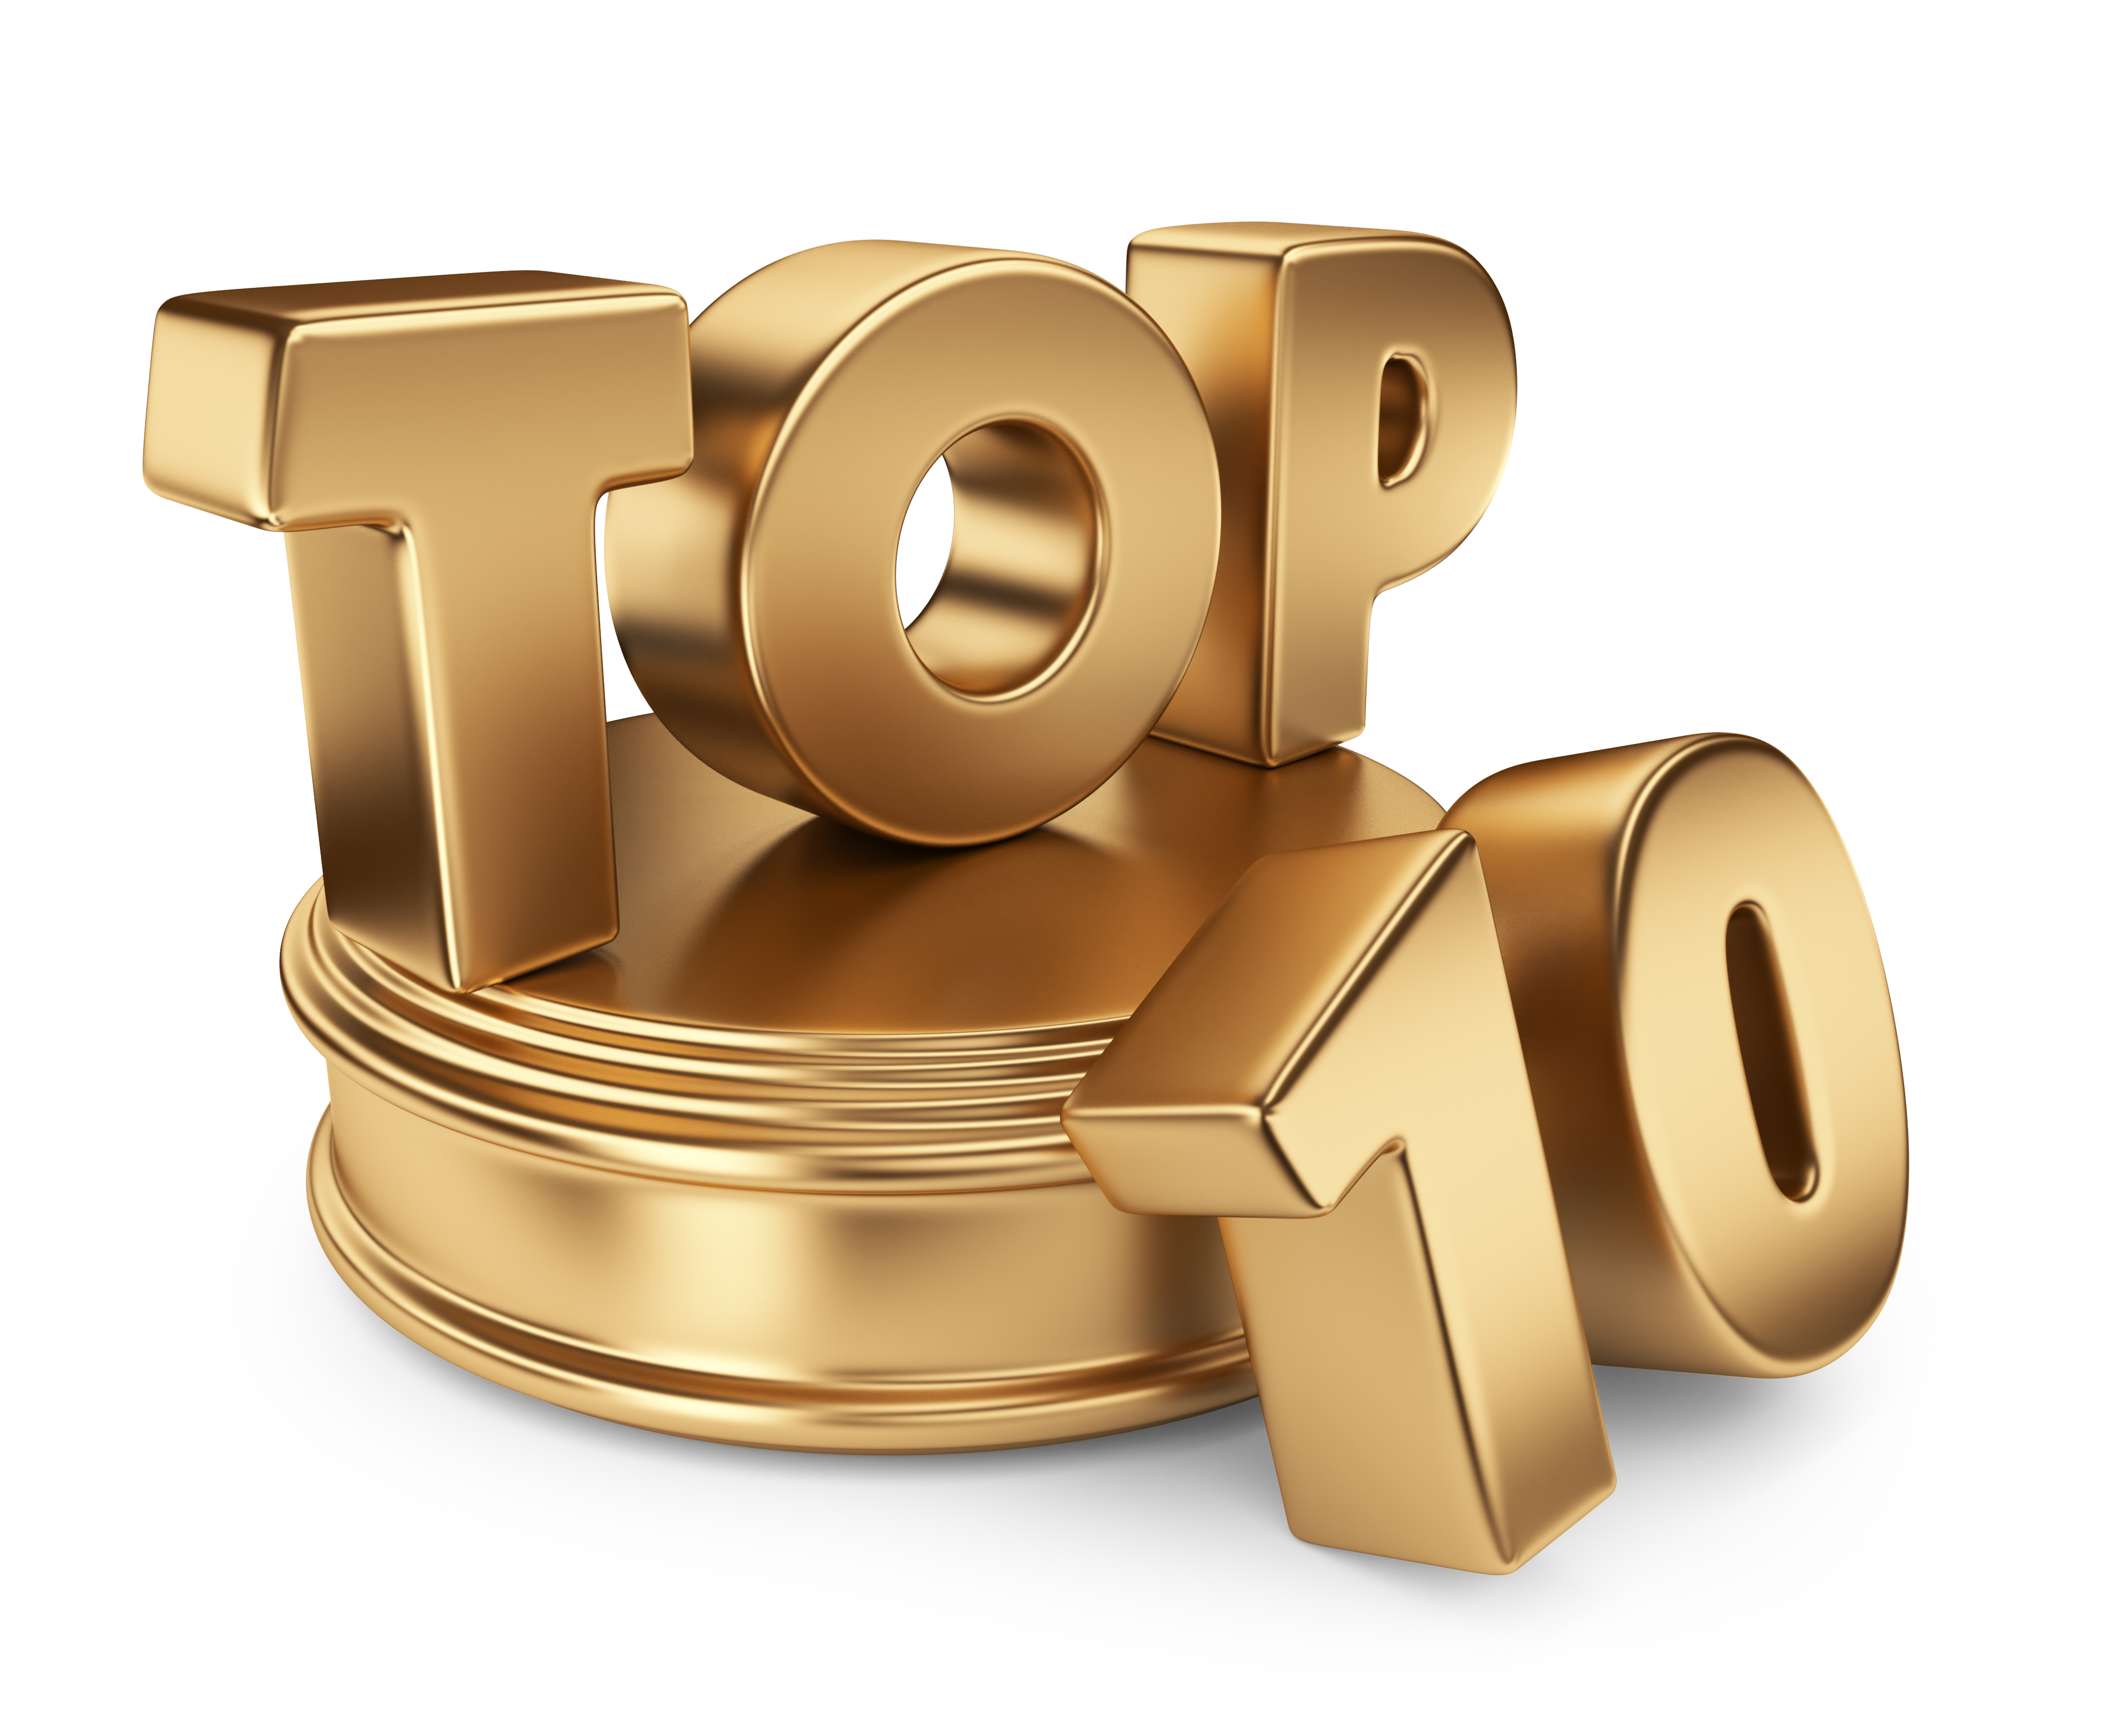 Top 10 Articles